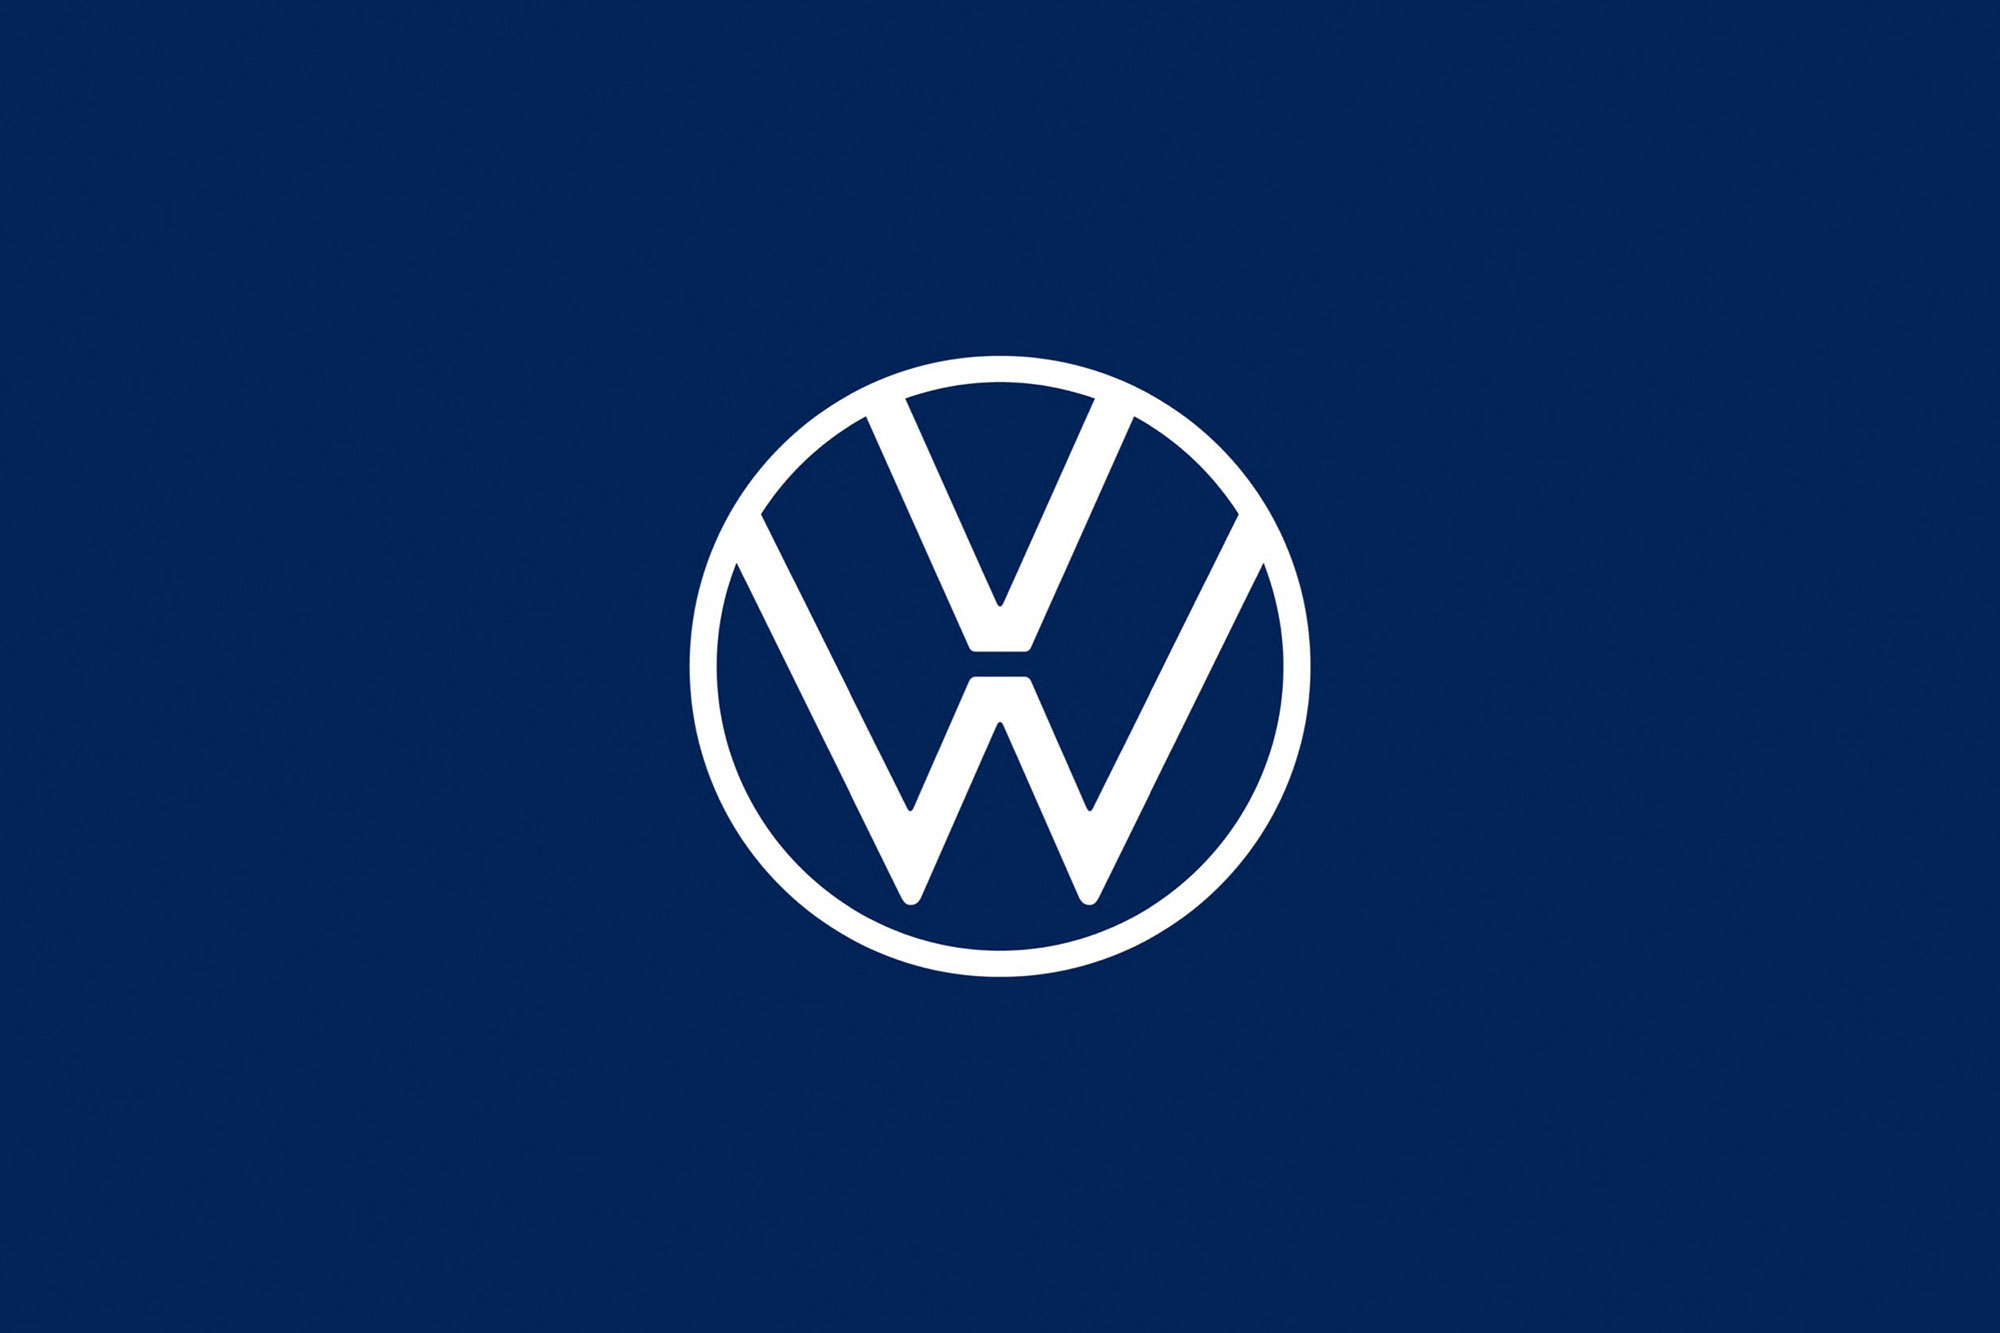 Η  Volkswagen στην πρώτη θέση στην Ευρώπη και το 2021